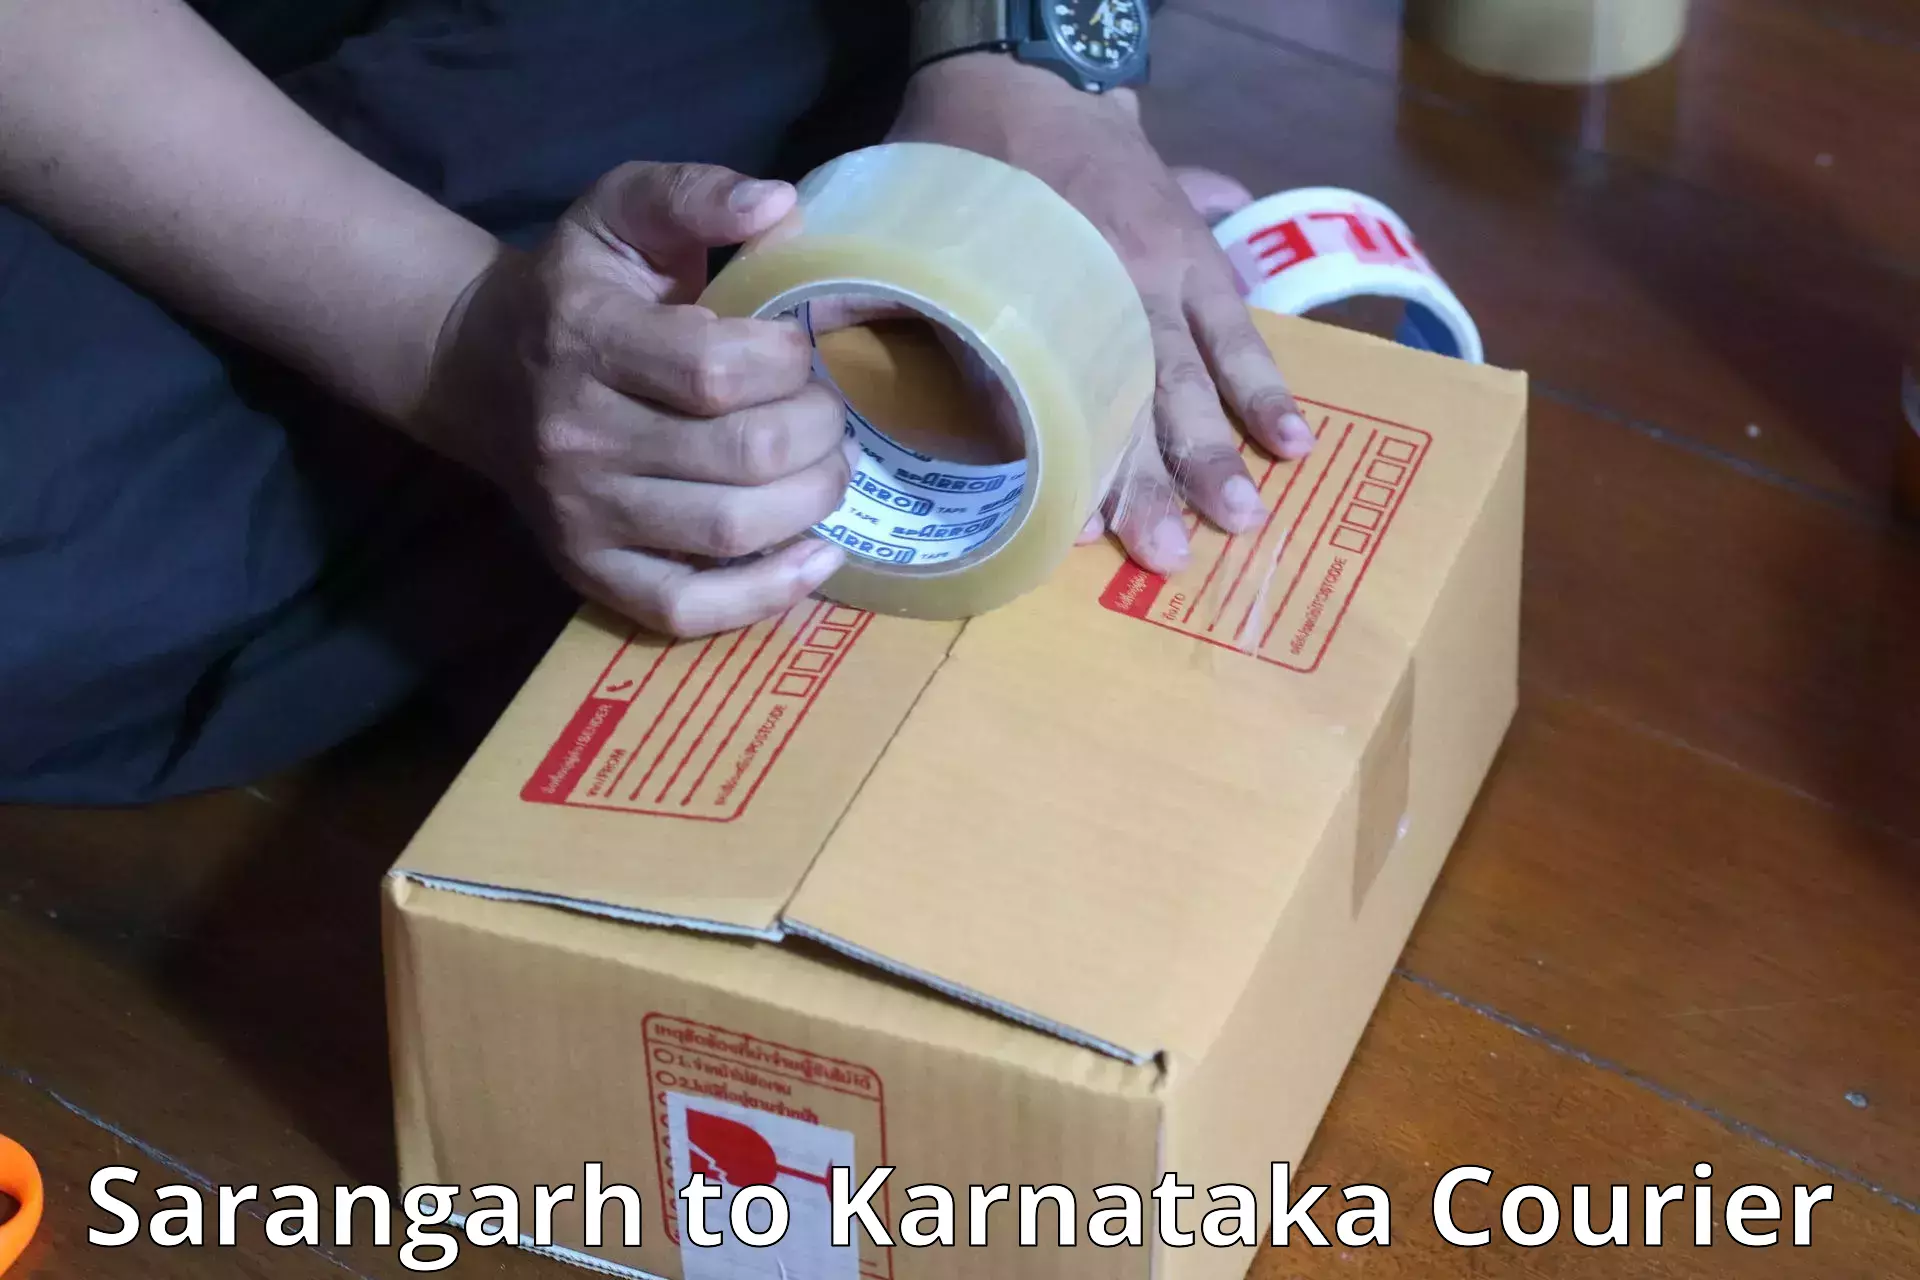 Baggage transport coordination Sarangarh to Karnataka